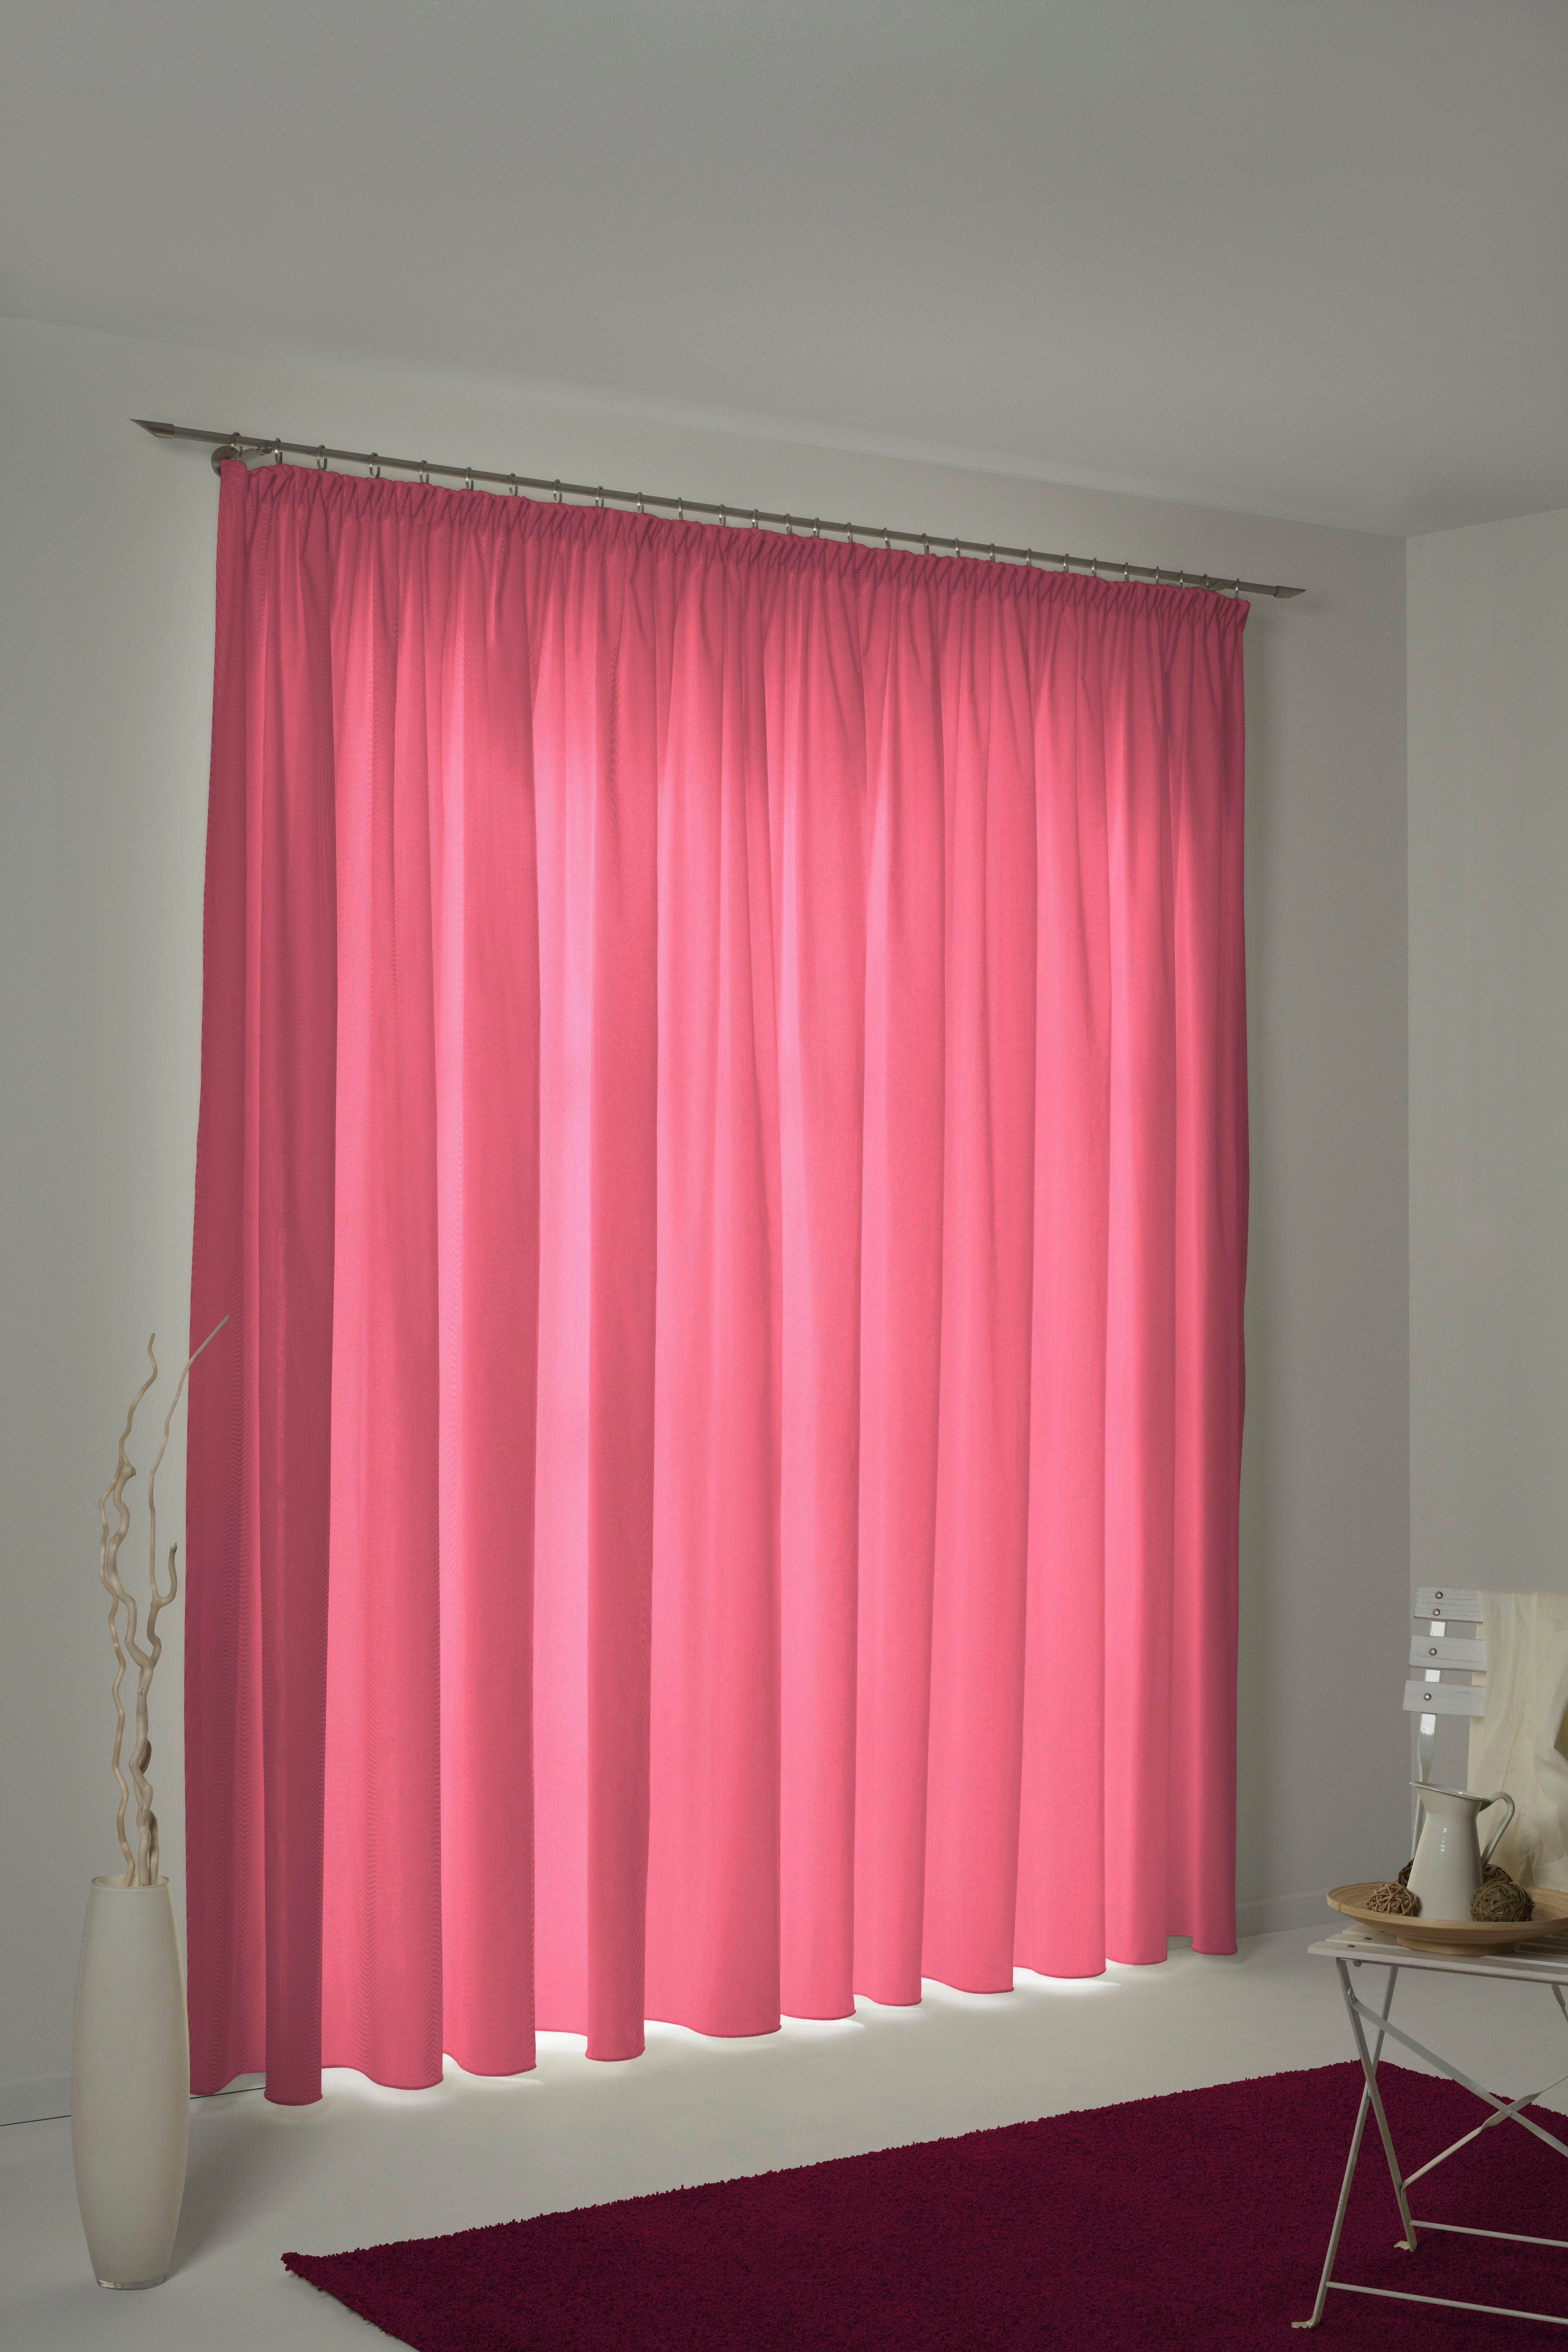 St), (1 nach Wirth, pink Maß blickdicht, Kräuselband Uni Vorhang Collection,